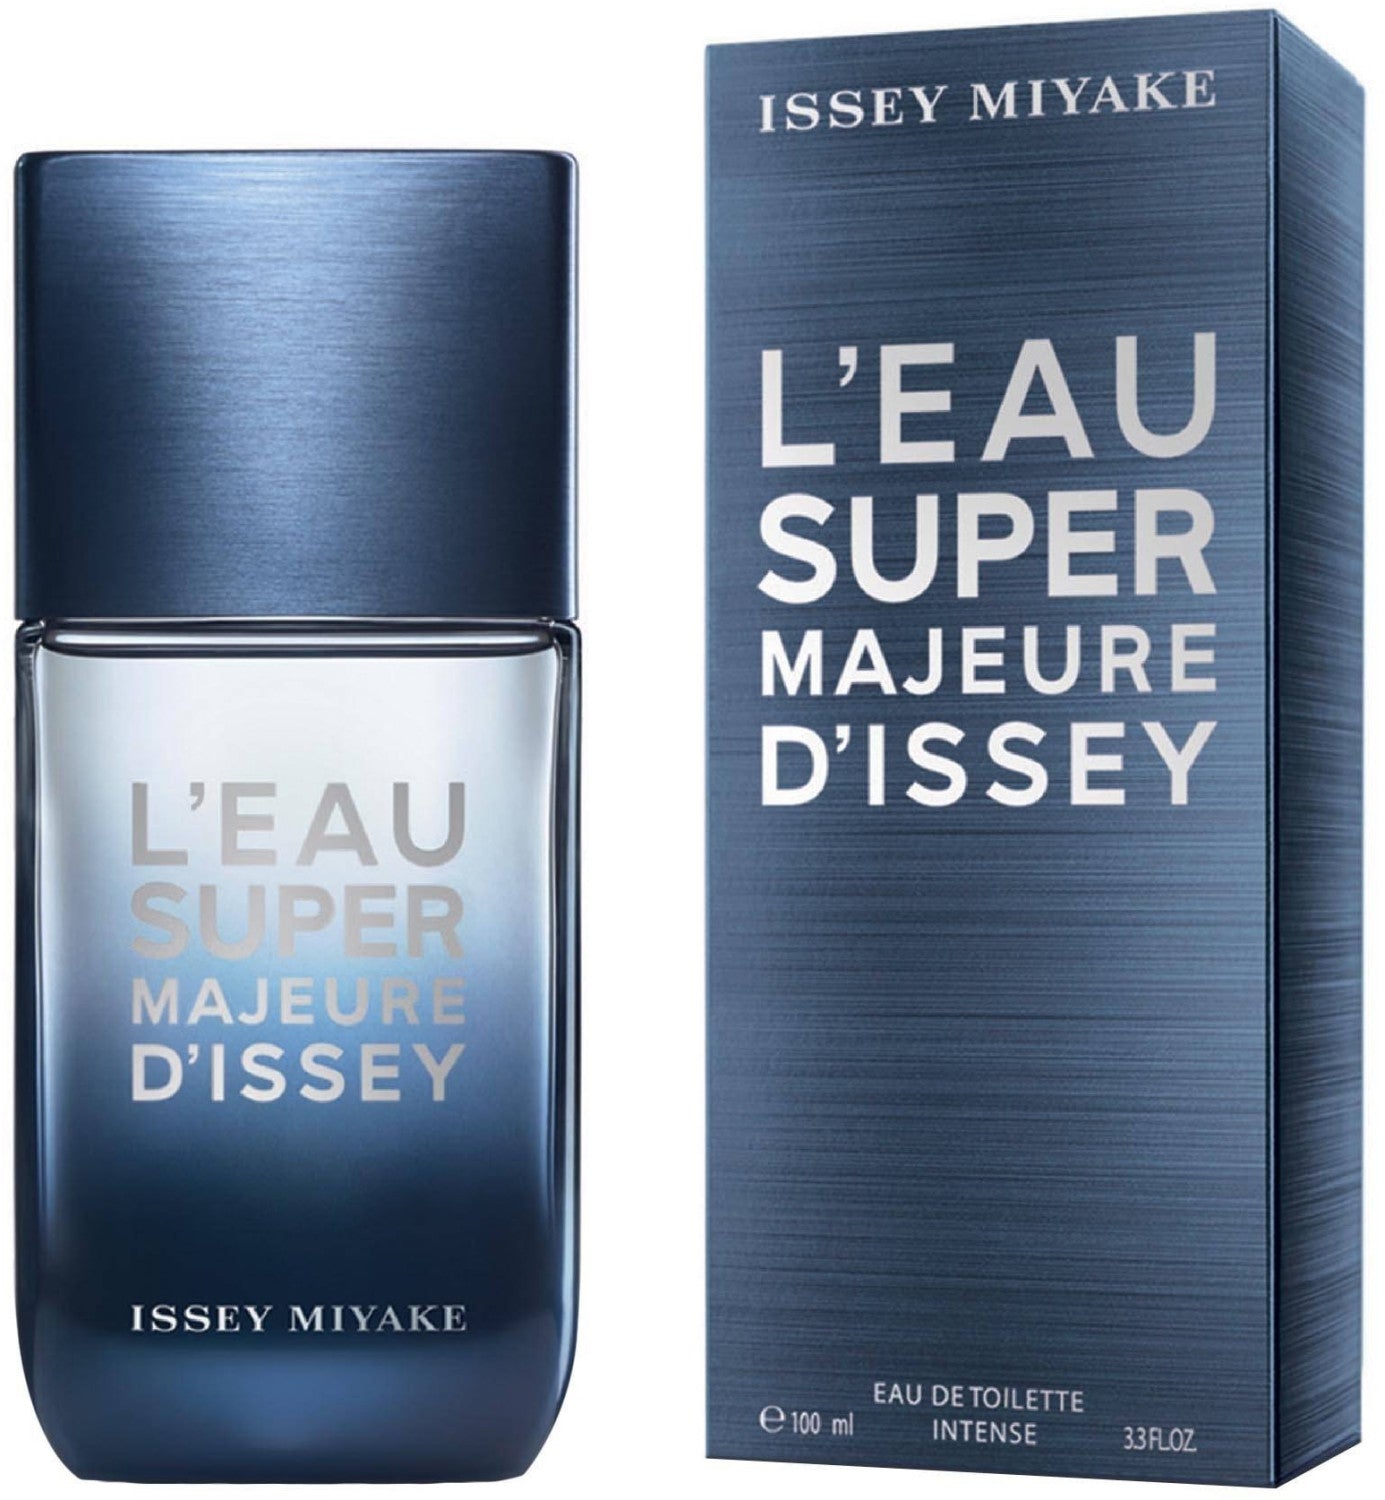 Issey Miyake L'Eau Super Majeure d'Issey Eau de Toilette Intense 100 ml